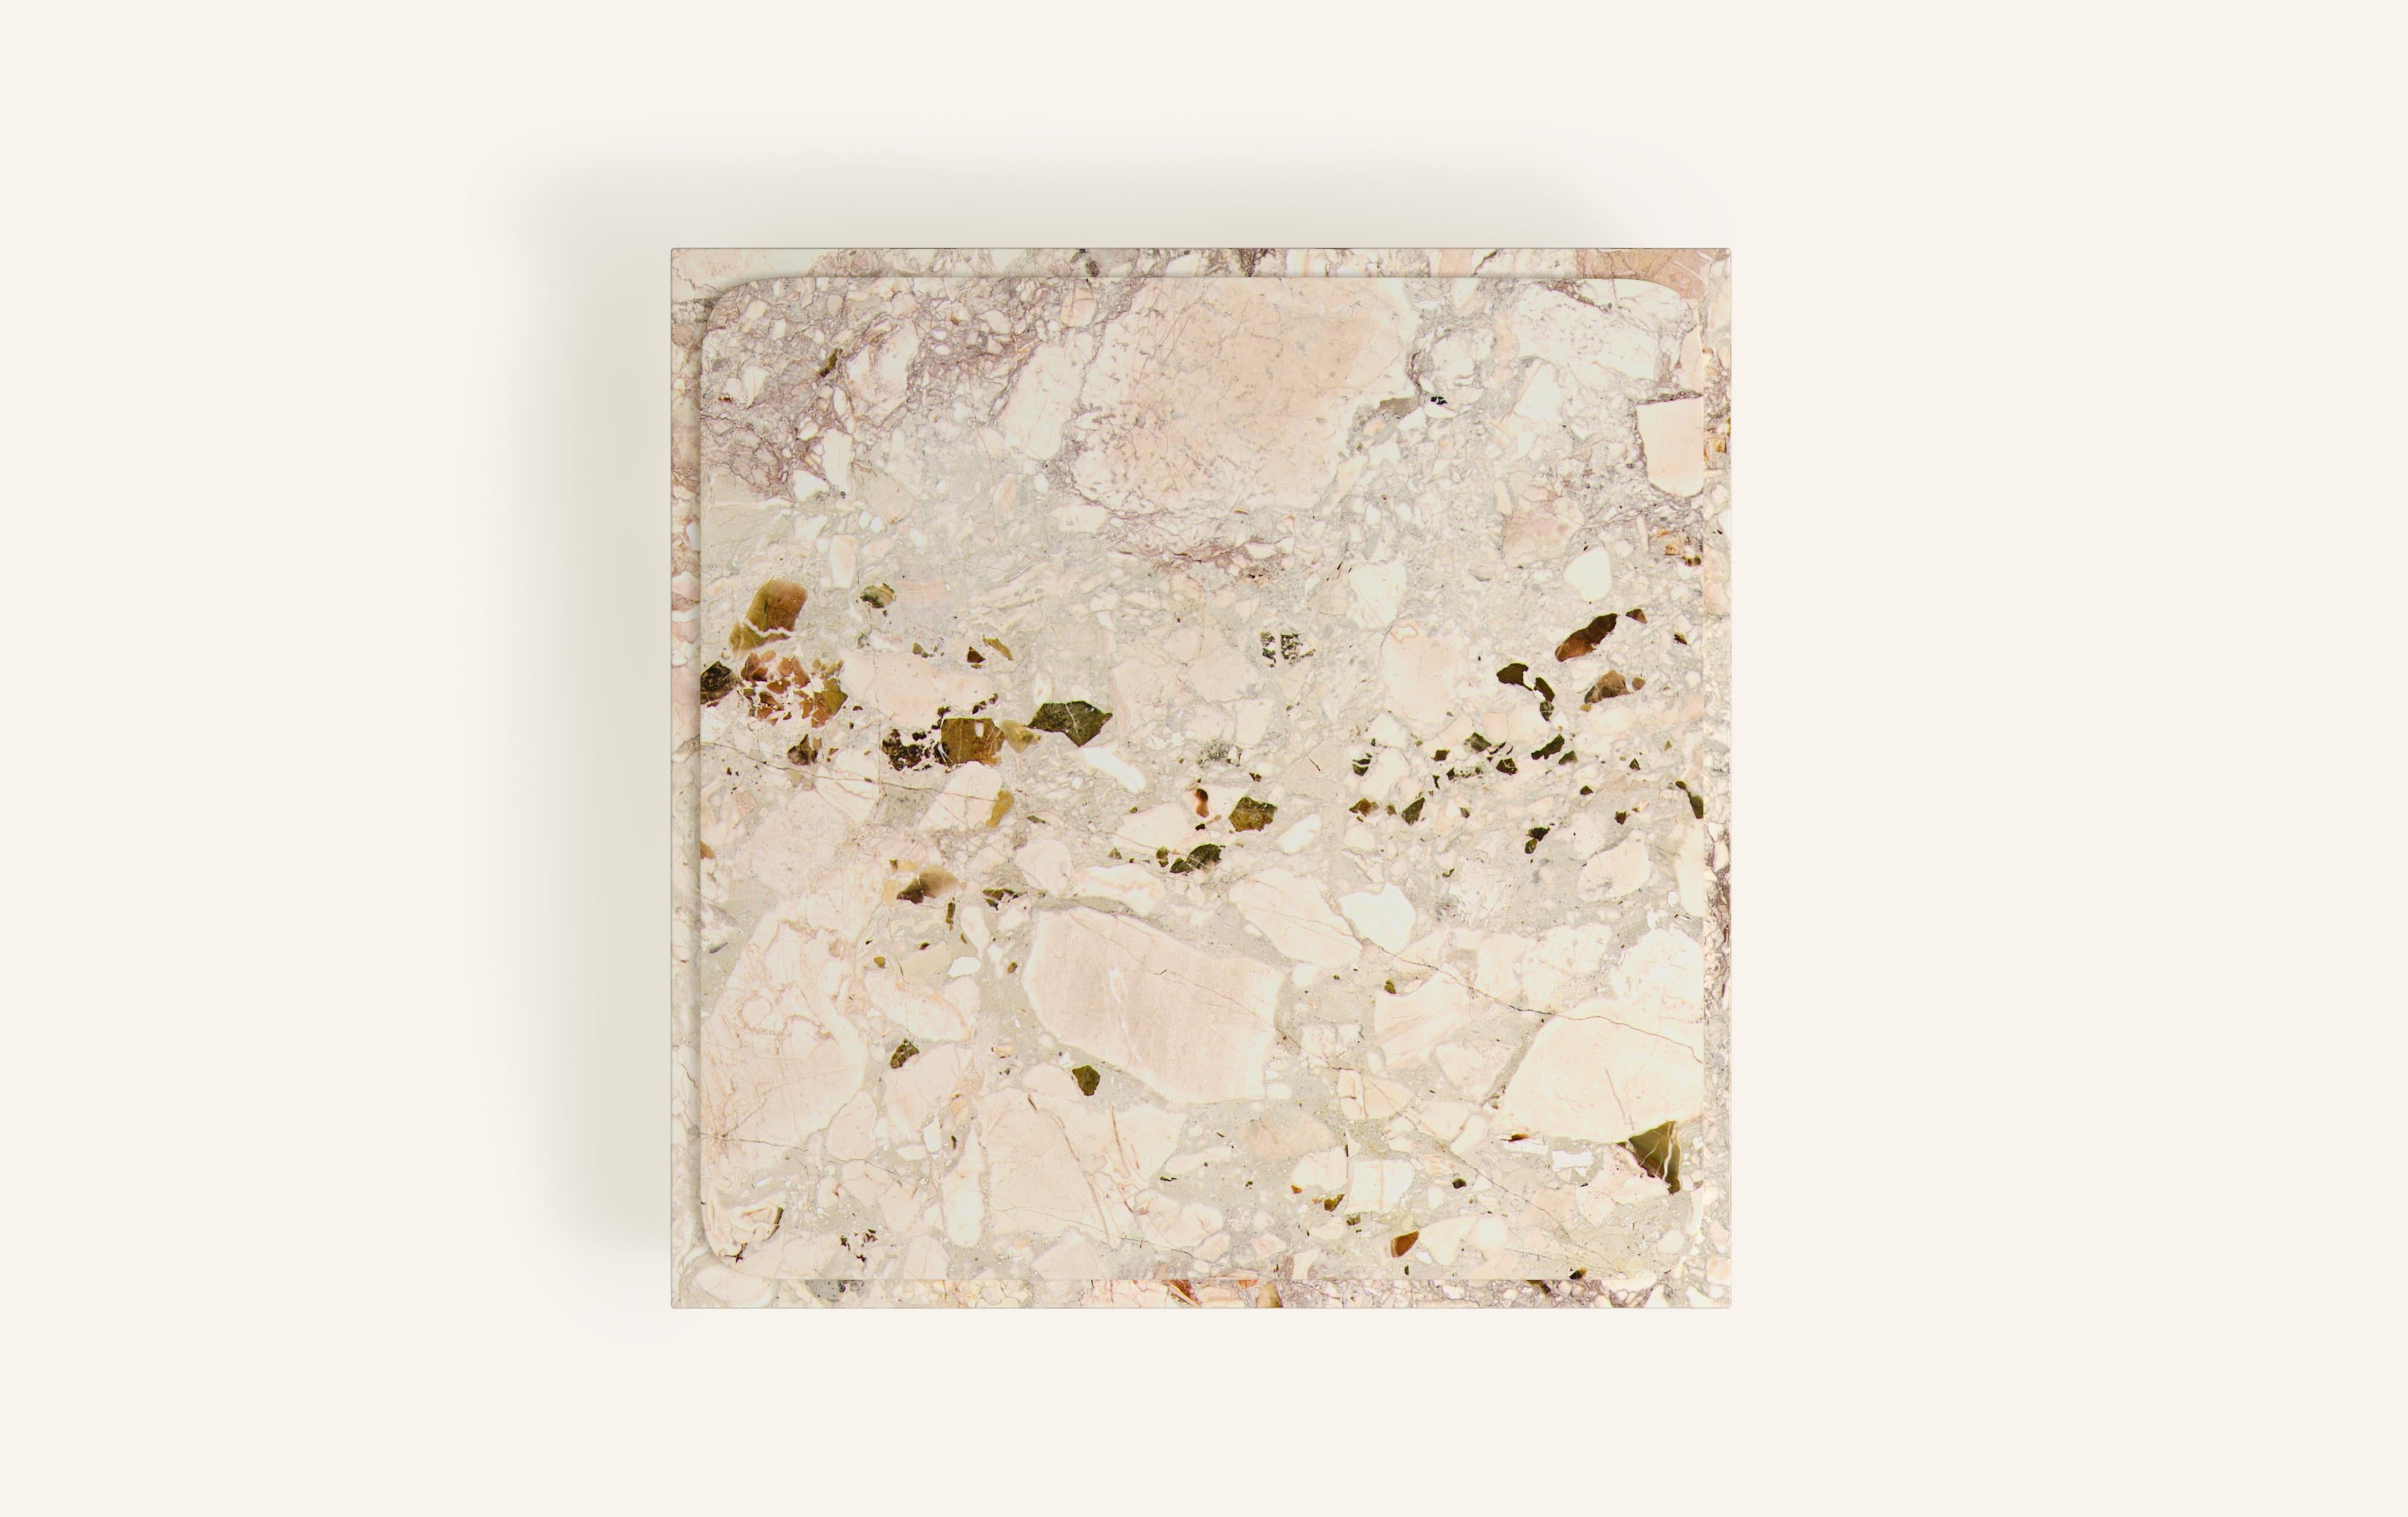 American FORM(LA) Cubo Square Plinth Coffee Table 60”L x 60”W x 13”H Breccia Rosa Marble For Sale